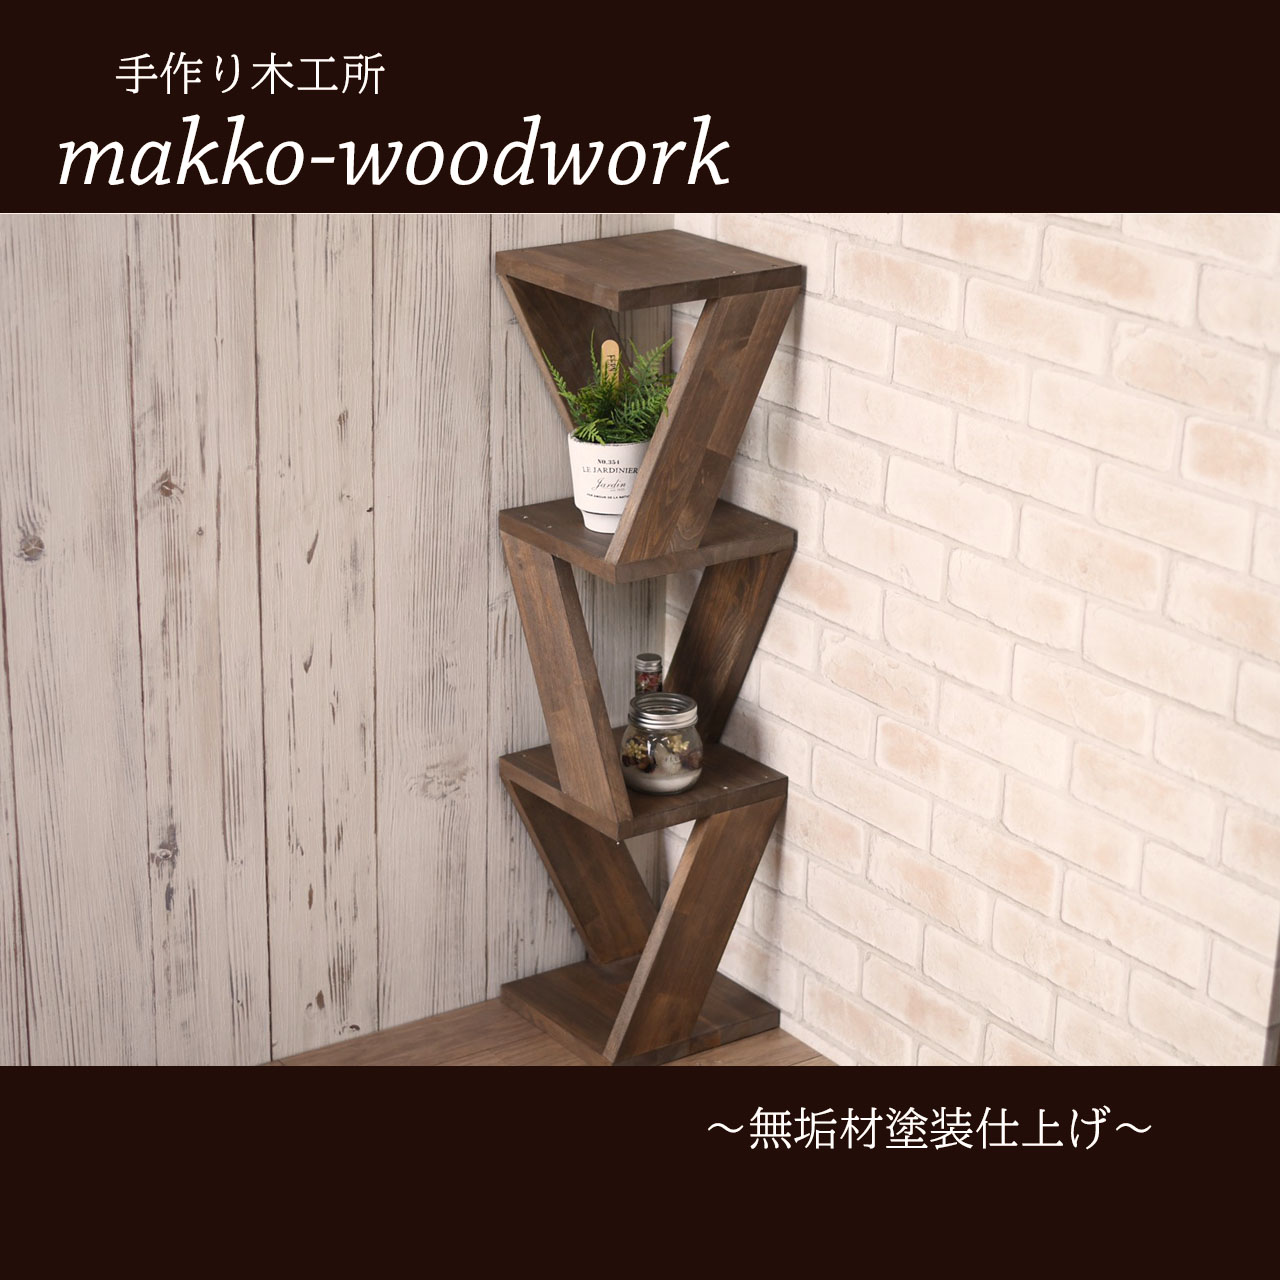 木製コーナースツール 4段ラック 収納ラック サイドテーブル Iichi ハンドメイド クラフト作品 手仕事品の通販